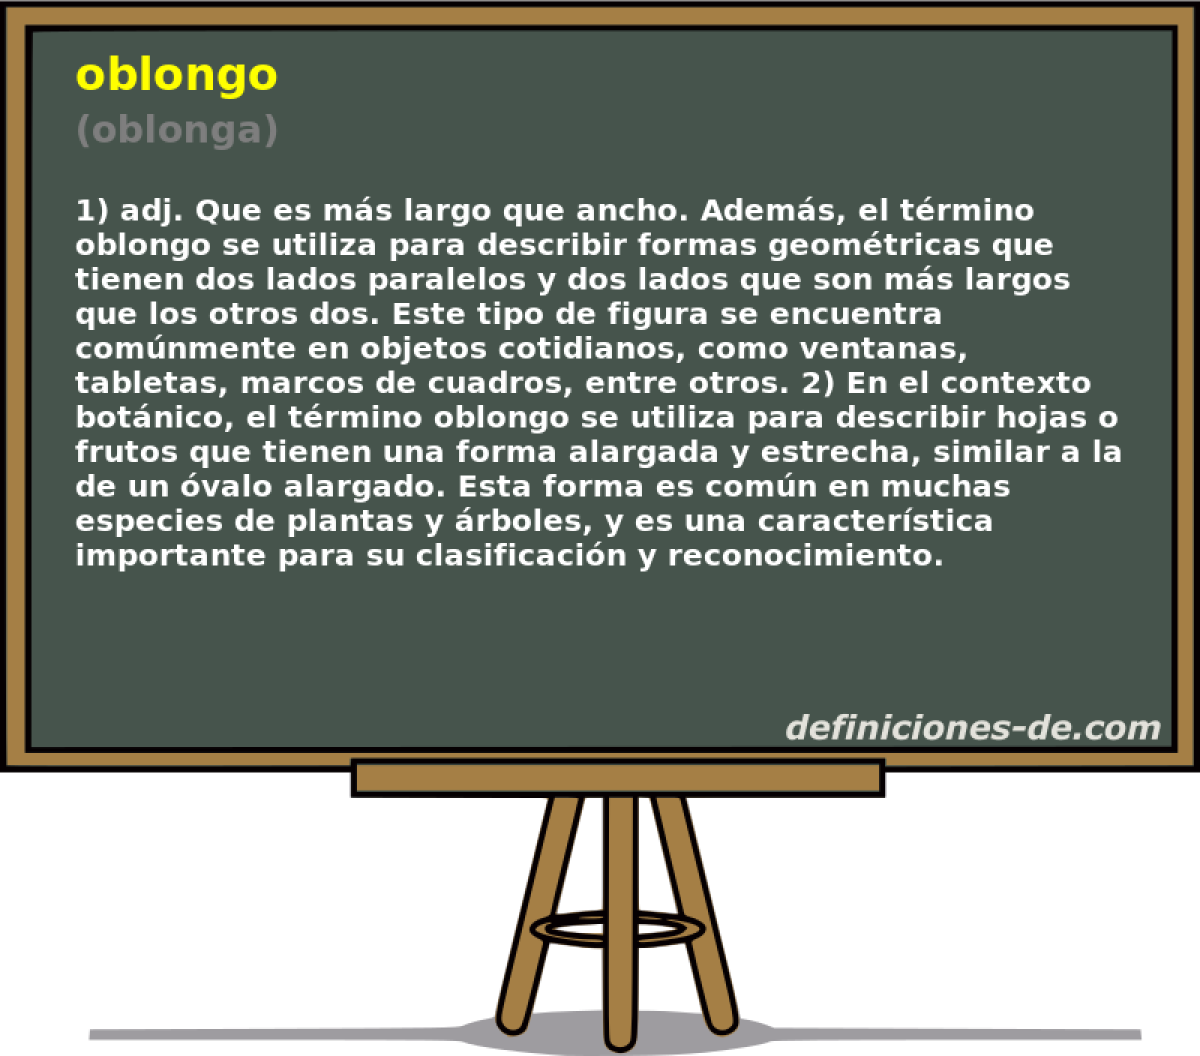 oblongo (oblonga)